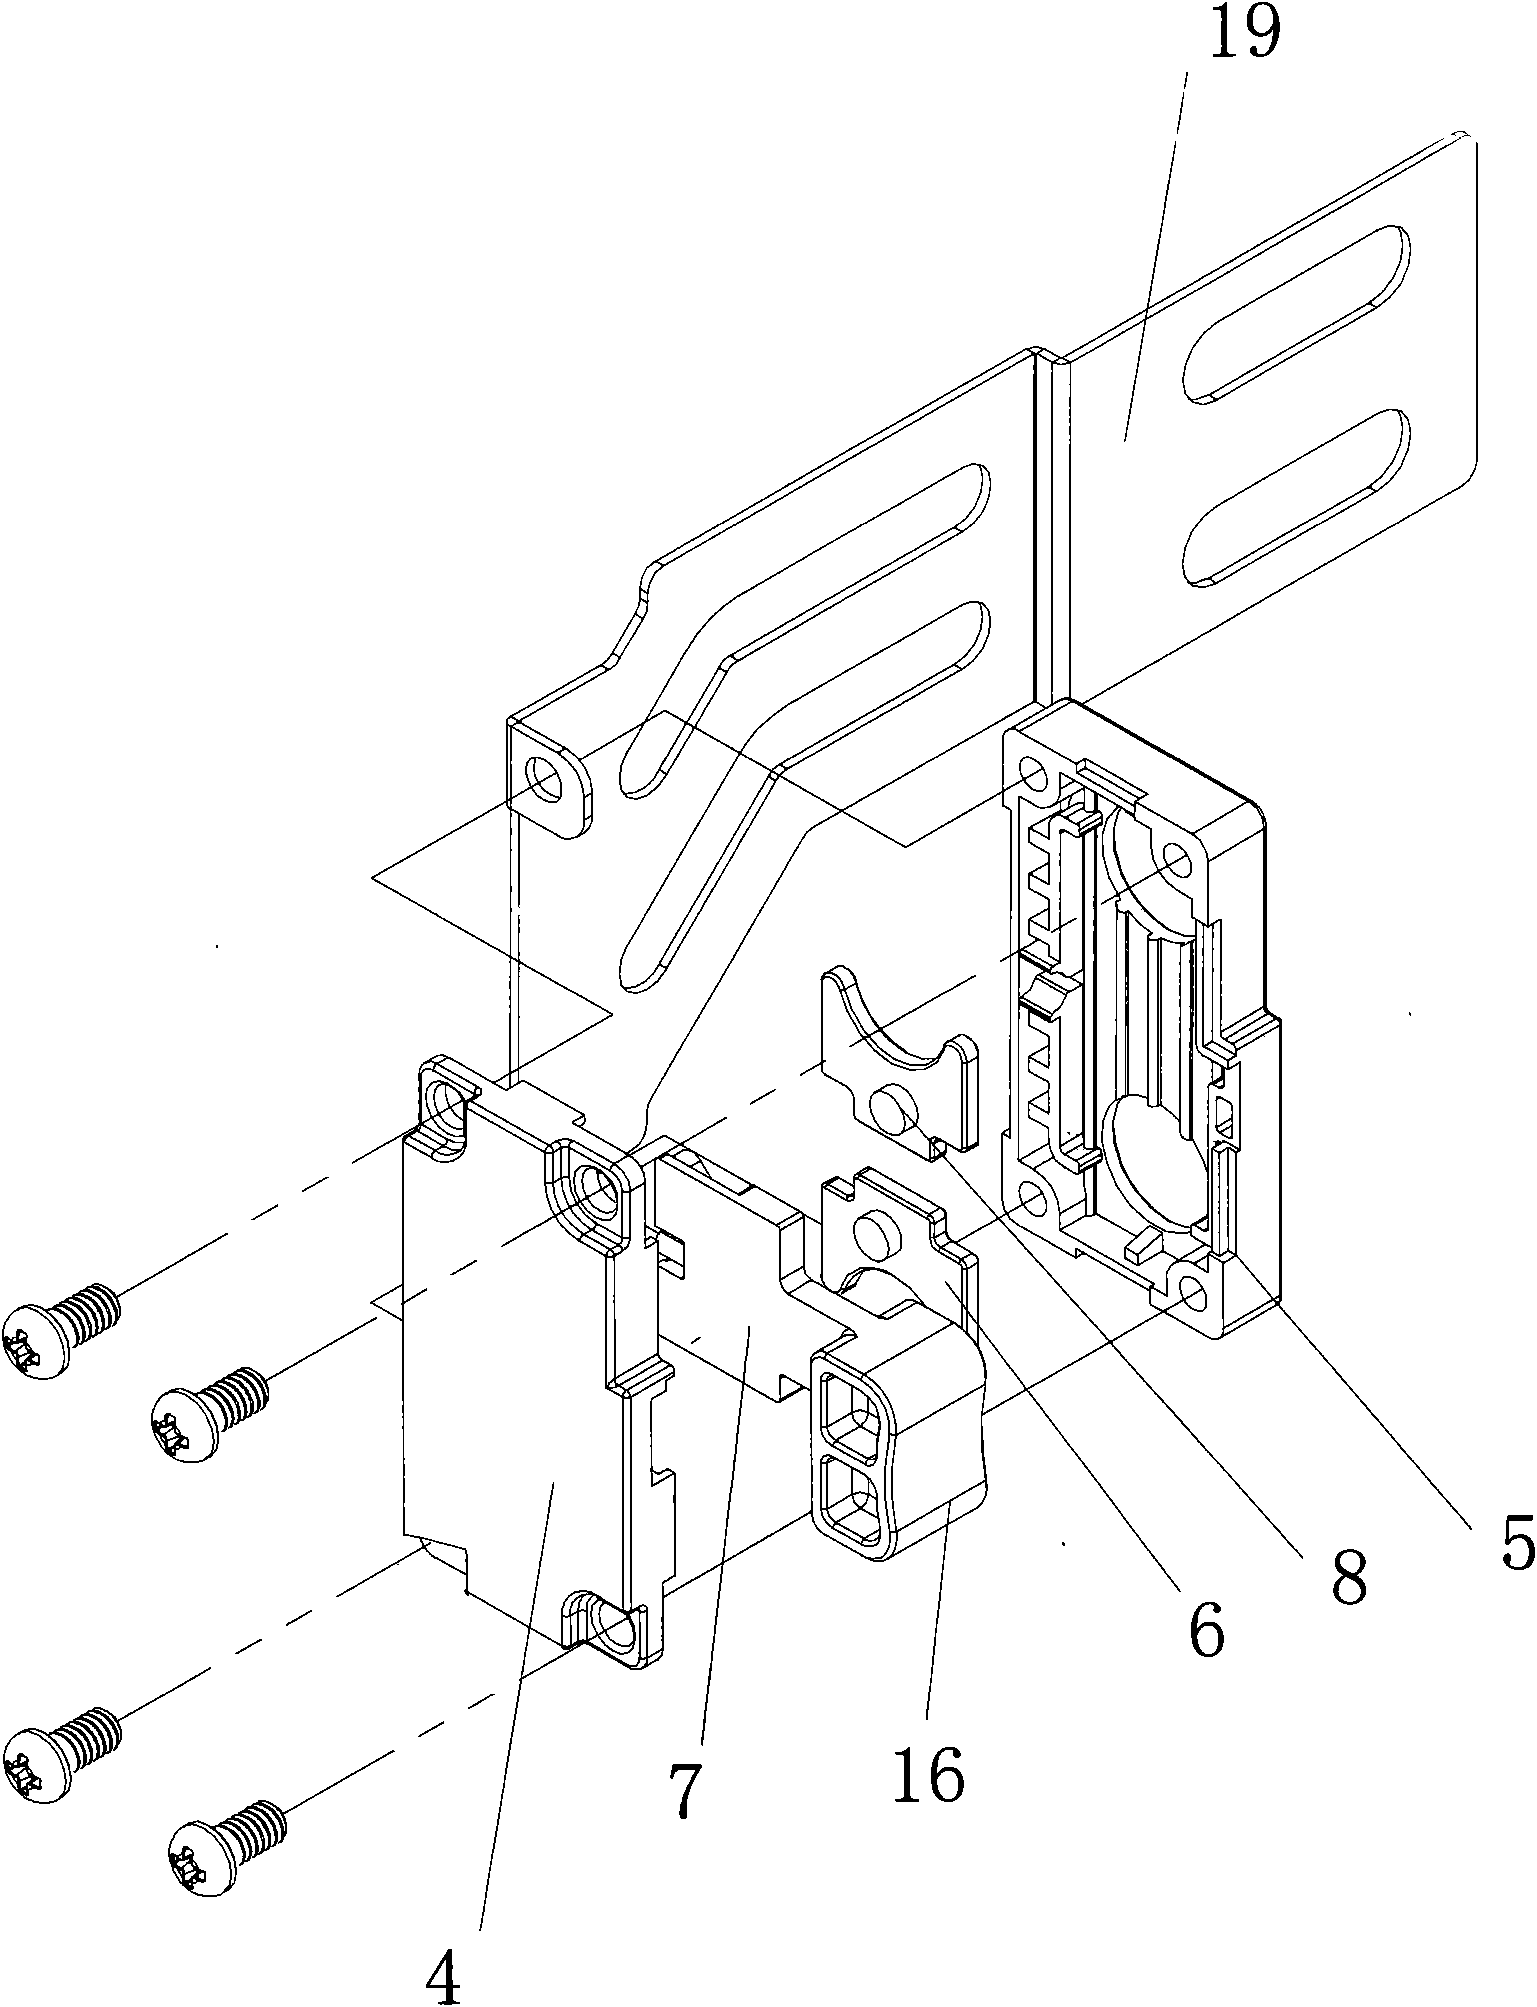 Locking mechanism for server slide rail